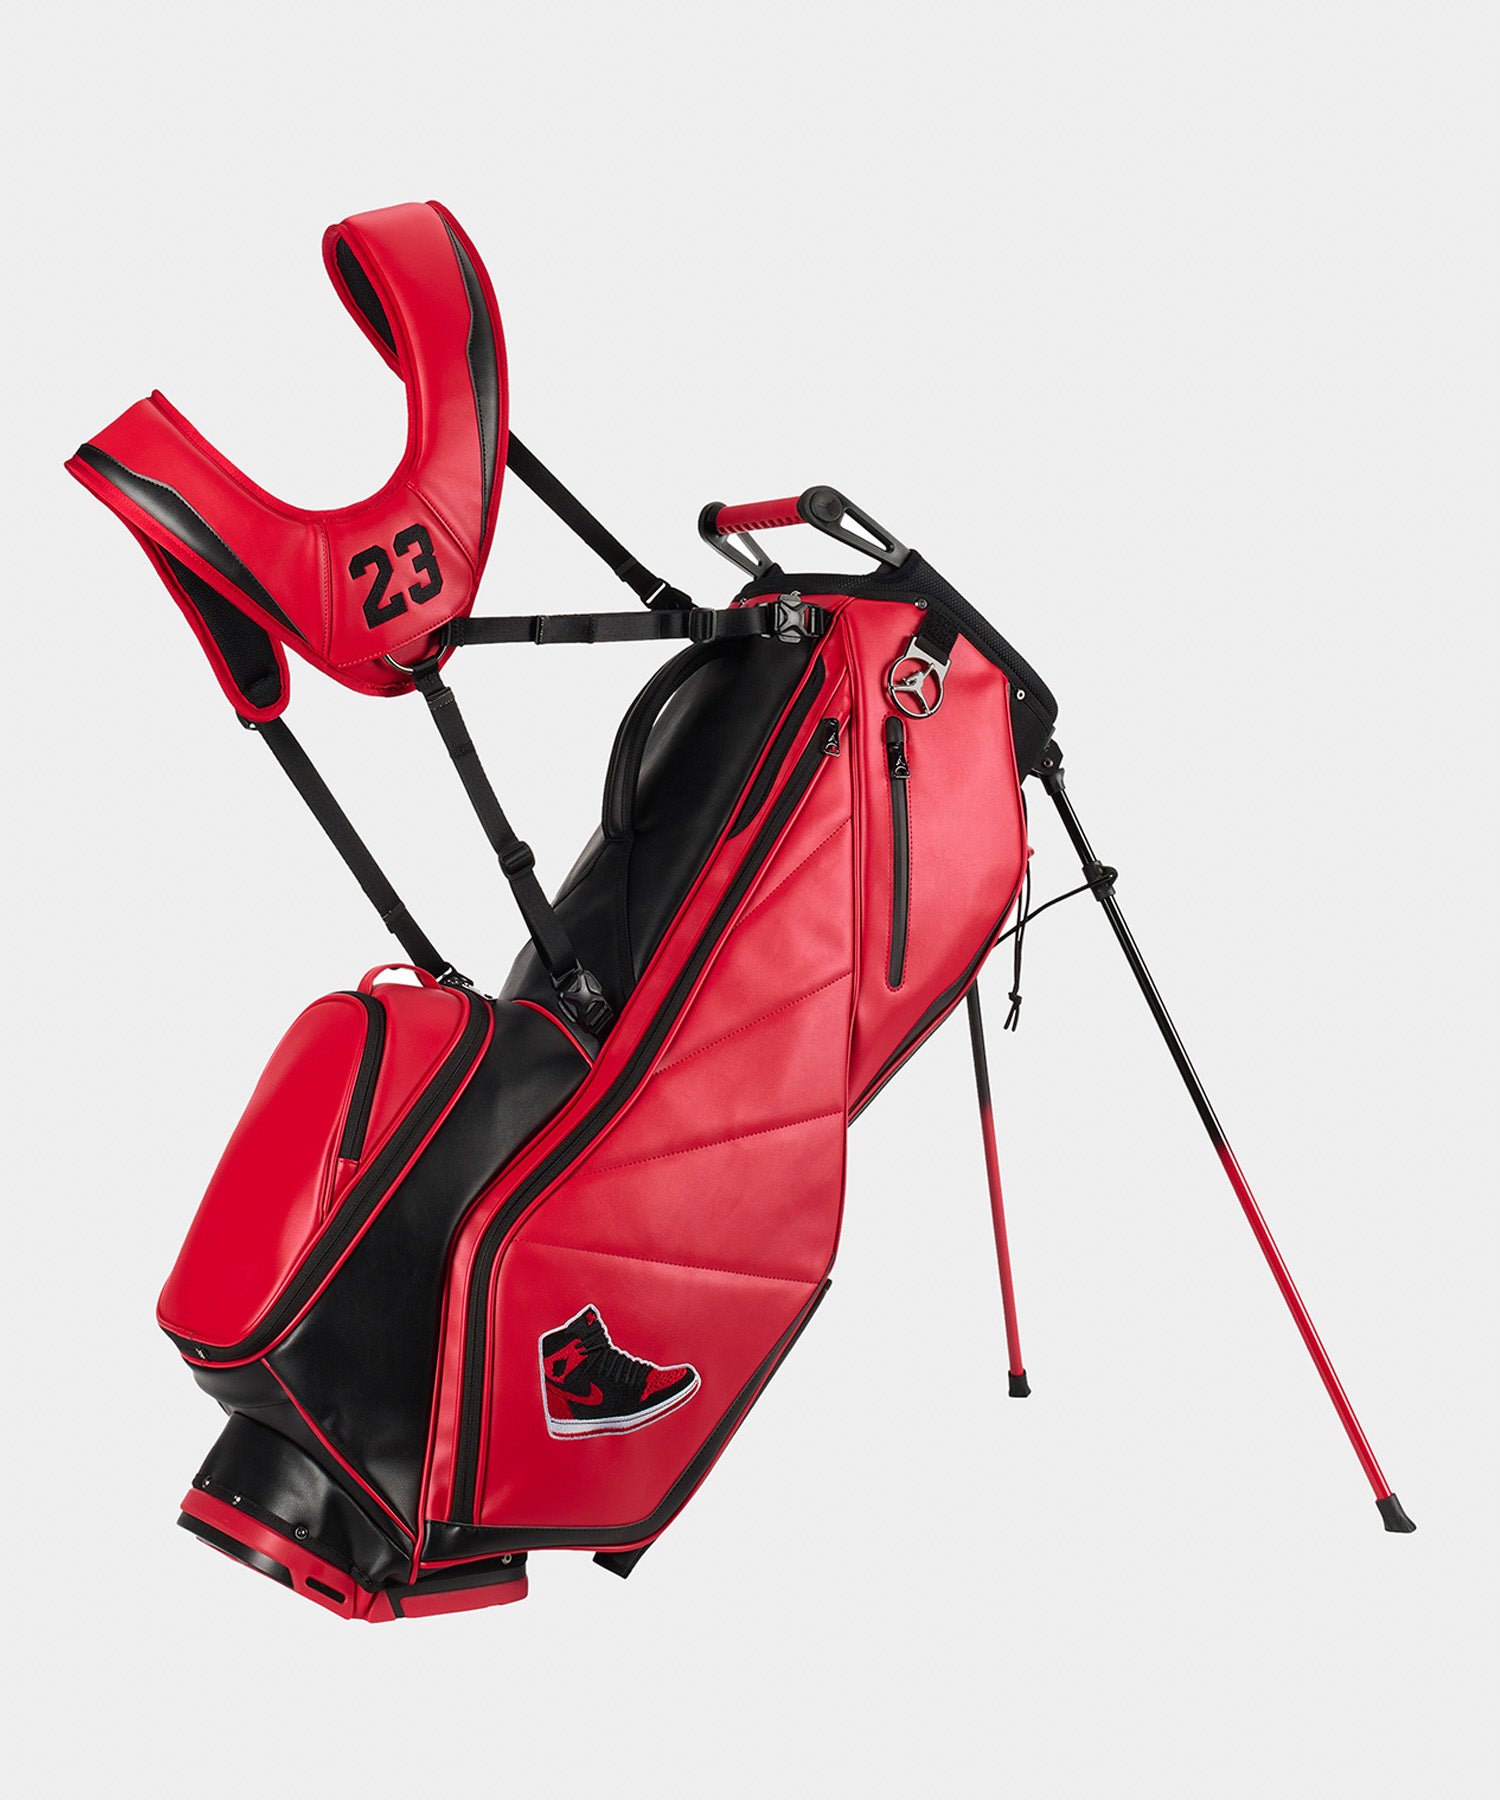 NIKE JORDAN Fade Away Premium Golf Bag バーシティレッド